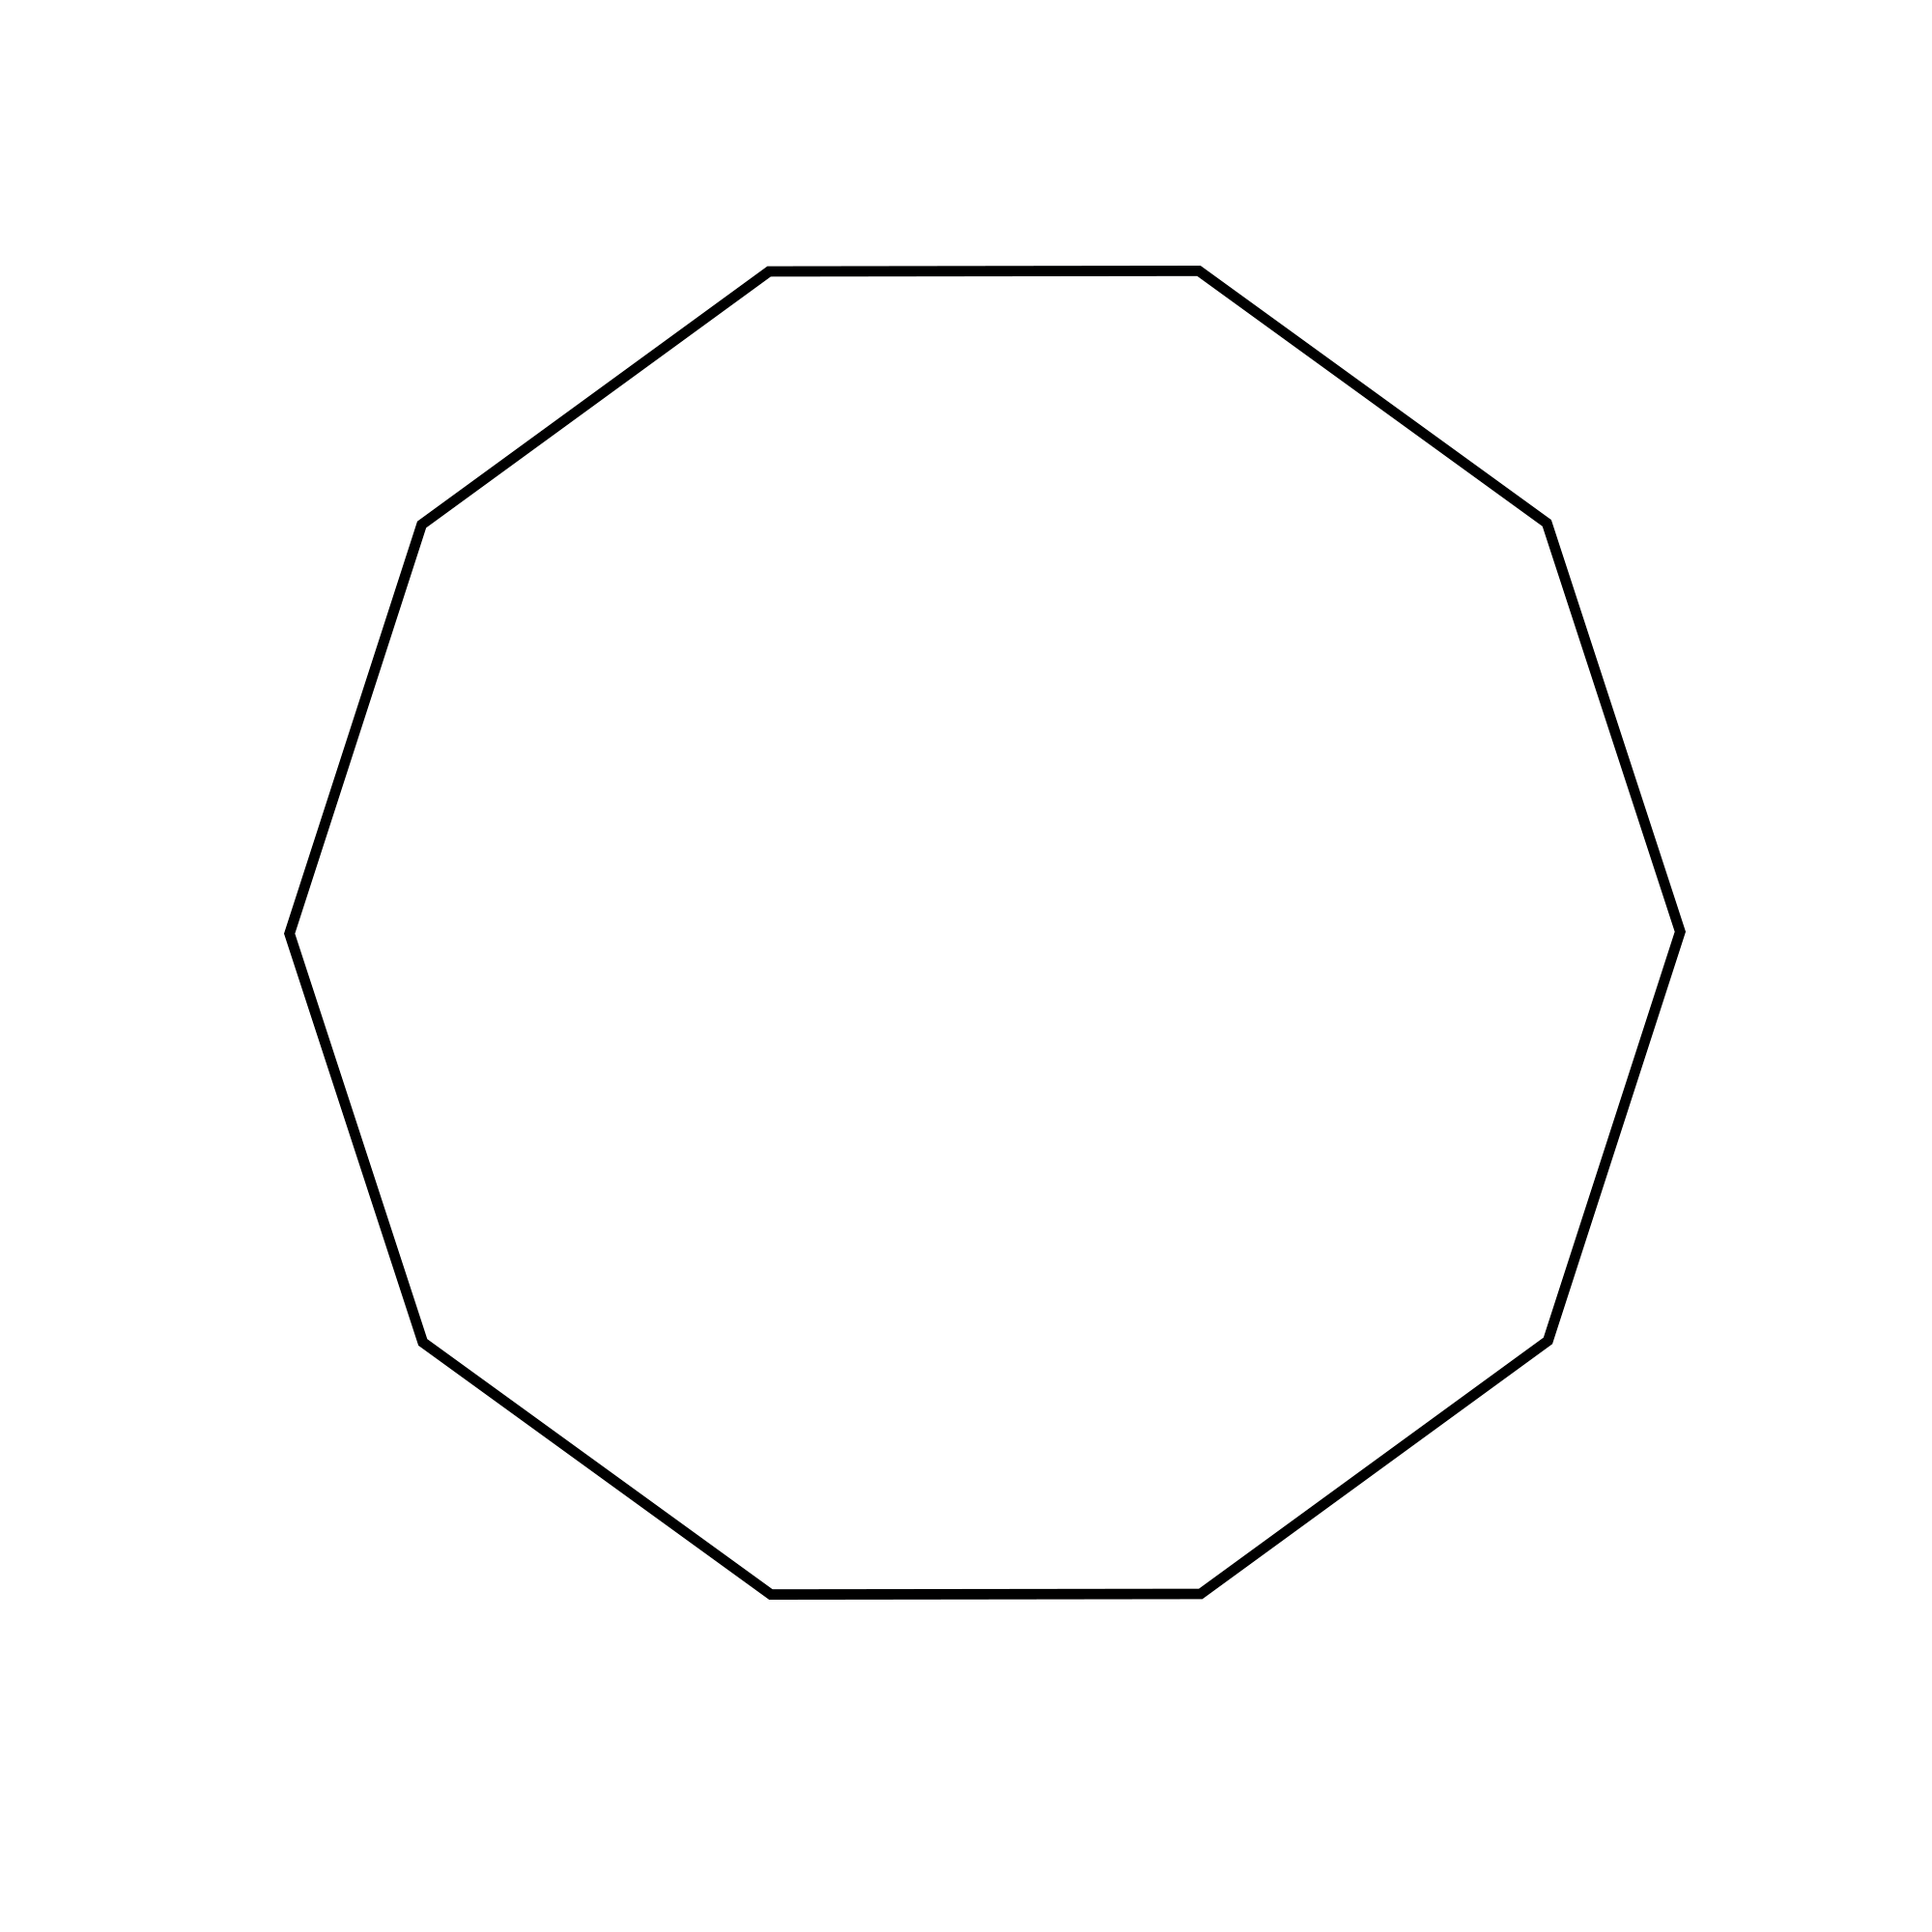 Figure geometriche - Figura geometrica piana - Decagono poligono a 10 lati